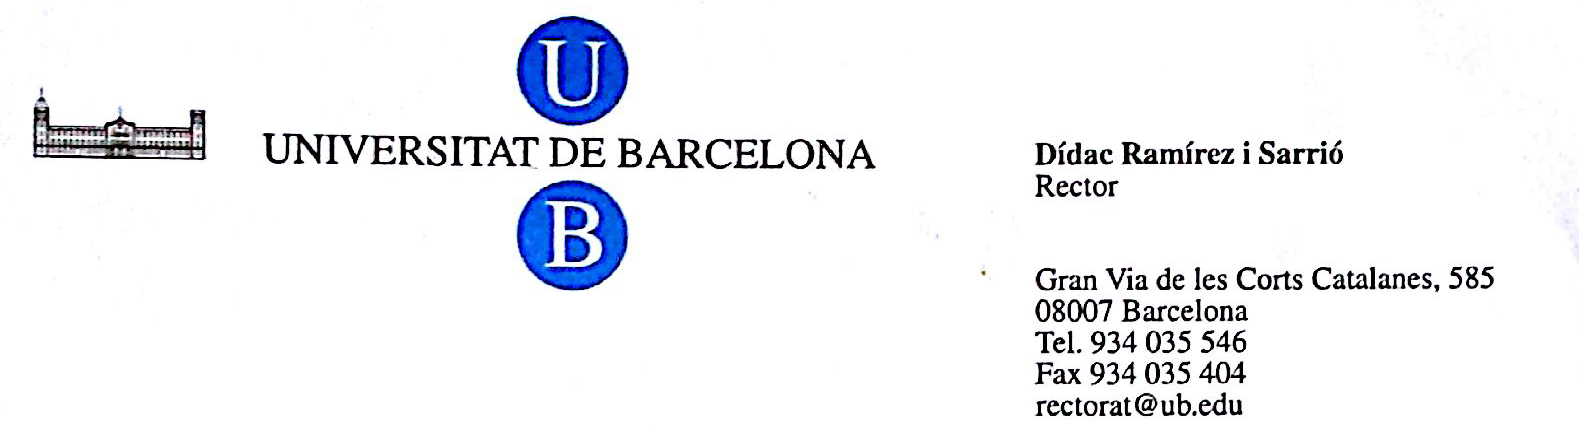 University of Barcelona Letter